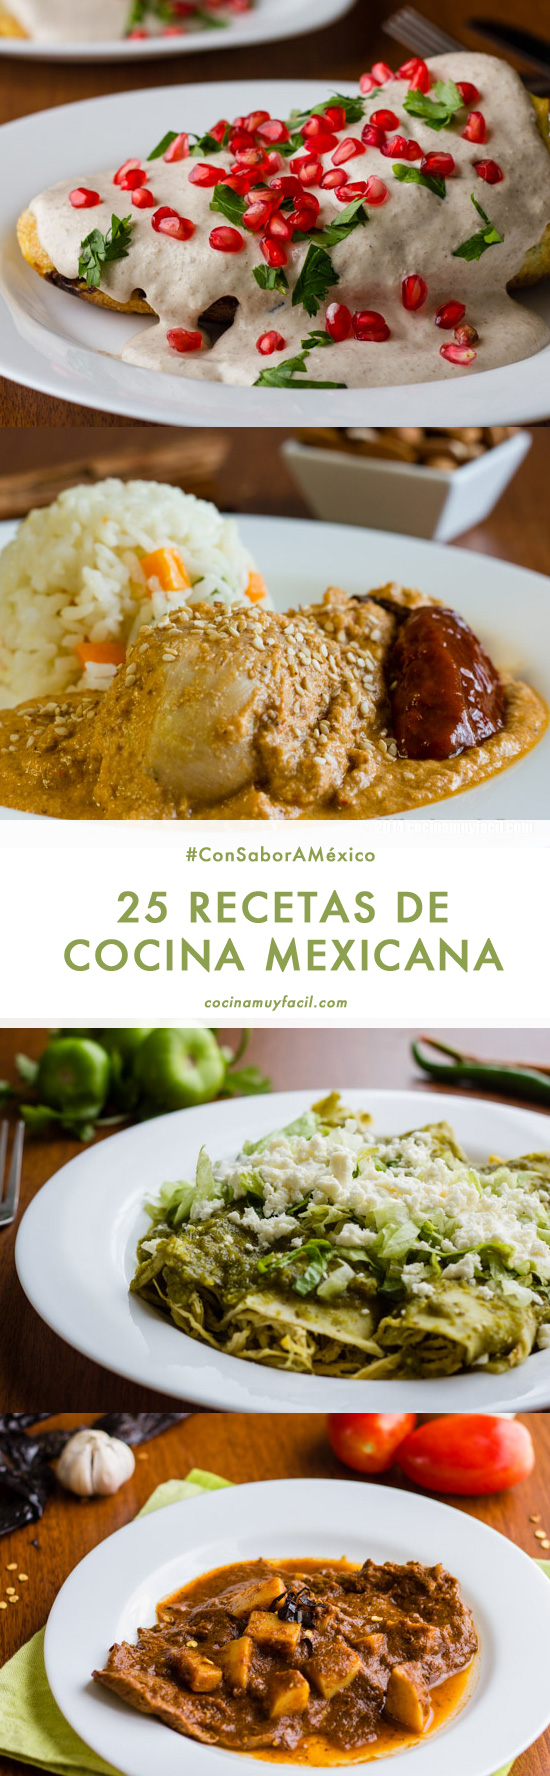 25 recetas de cocina tradicional mexicana, ¡porque tenemos mucho que  celebrar! | Cocina Muy Facil